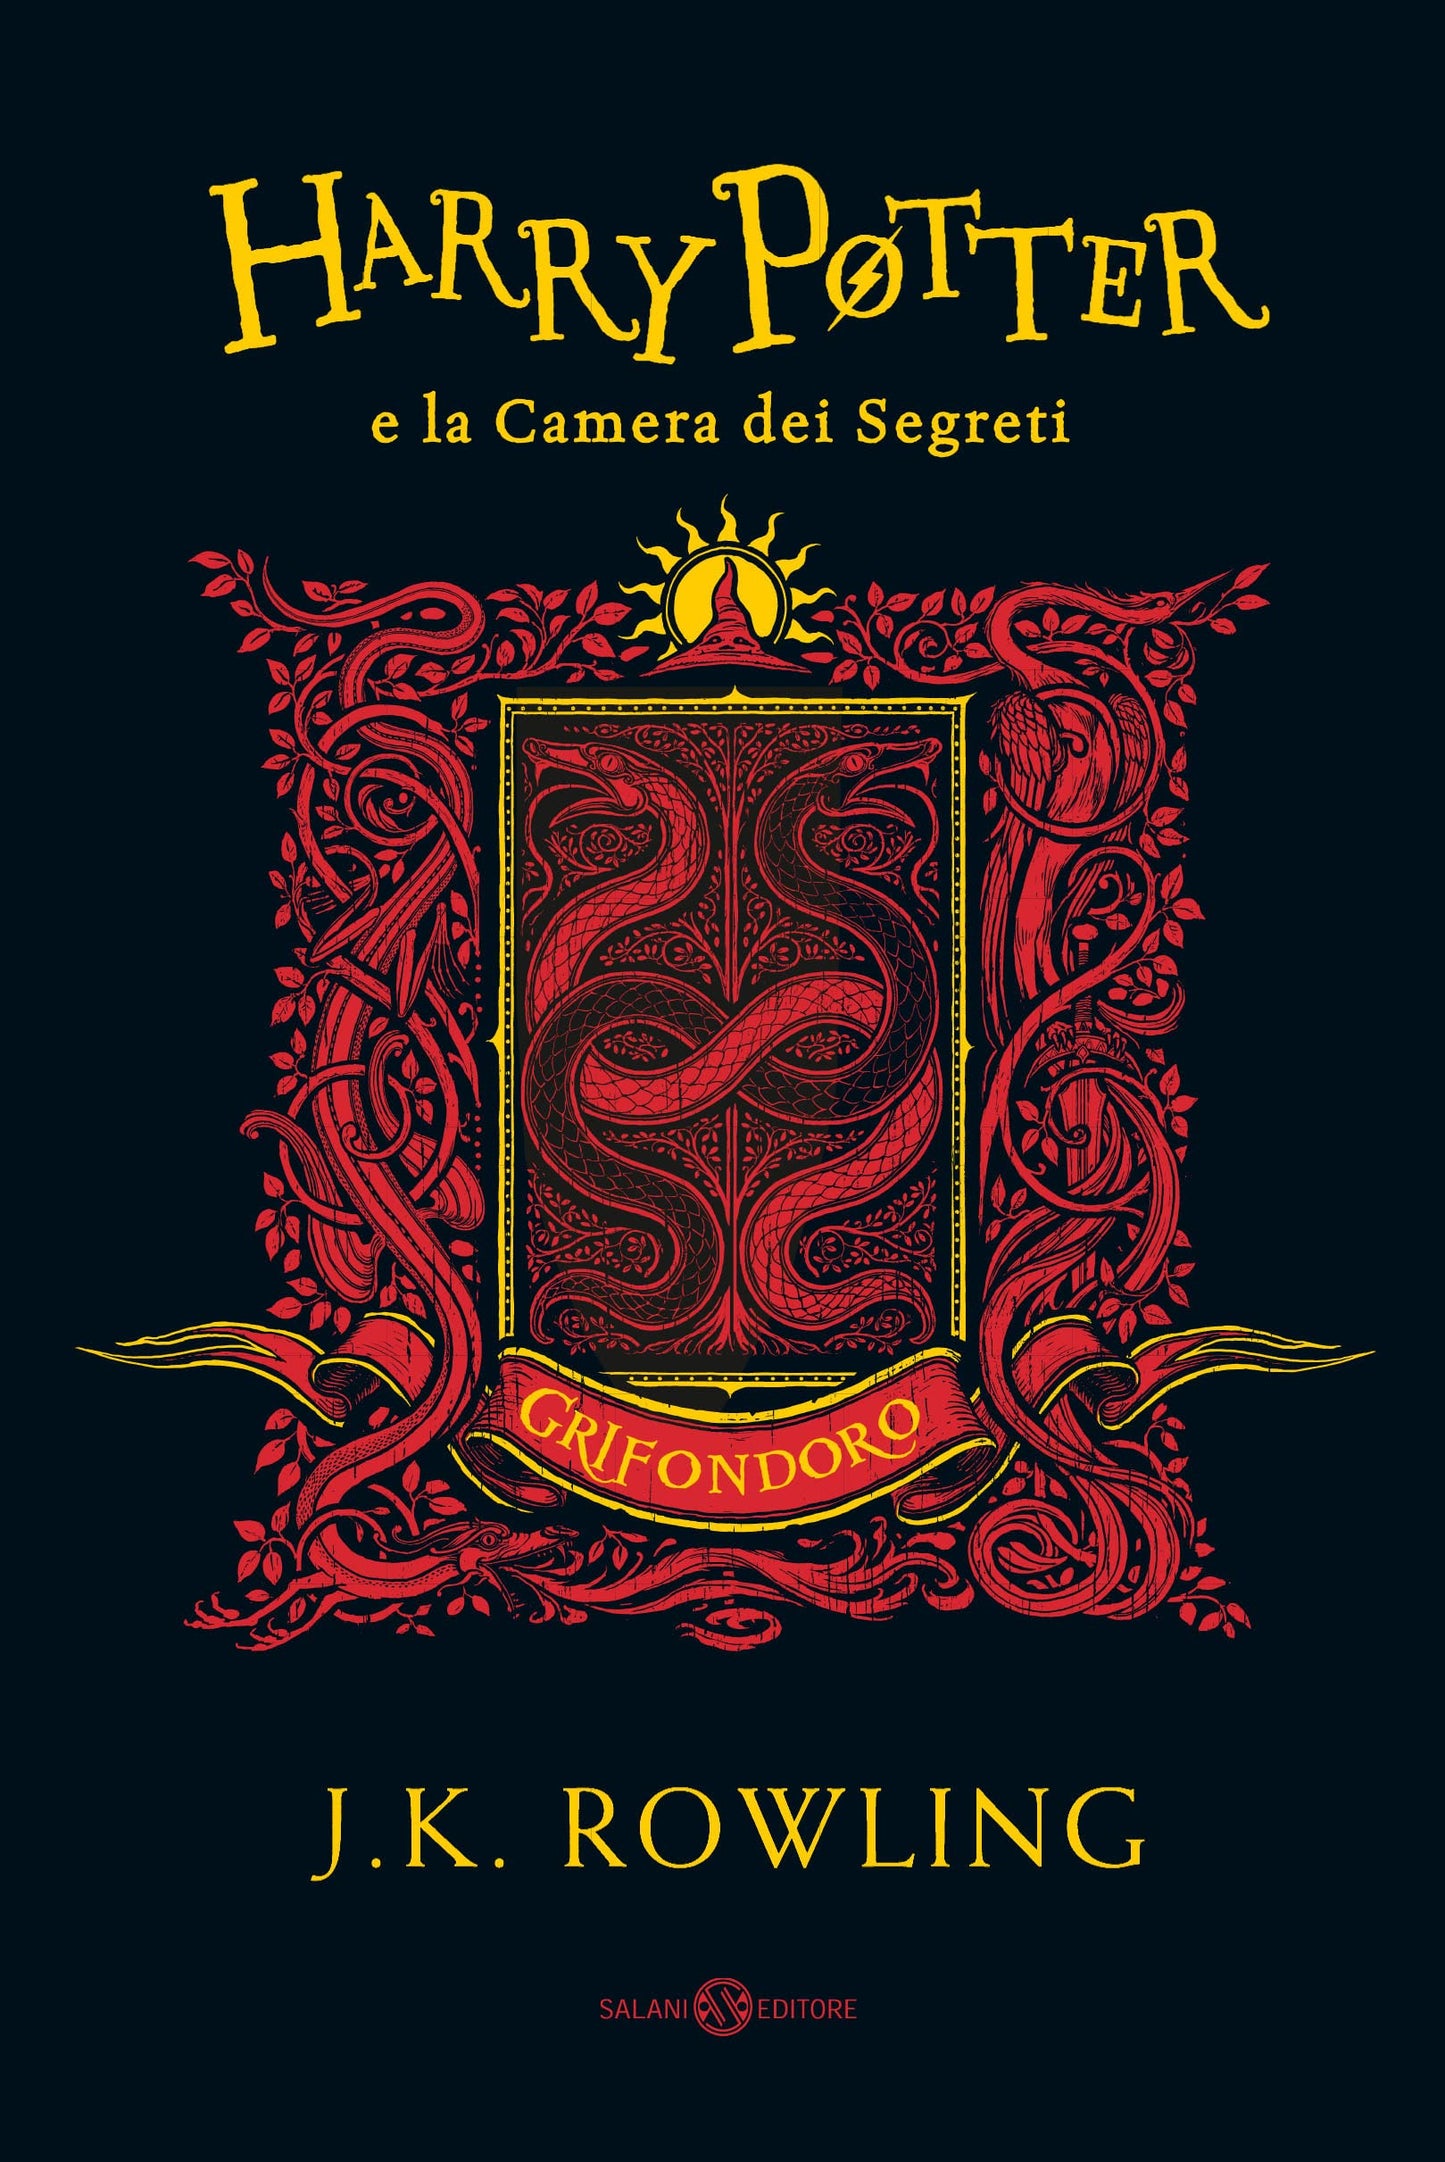 Harry Potter - edizione grifondoro - la serie completa - cofanetto